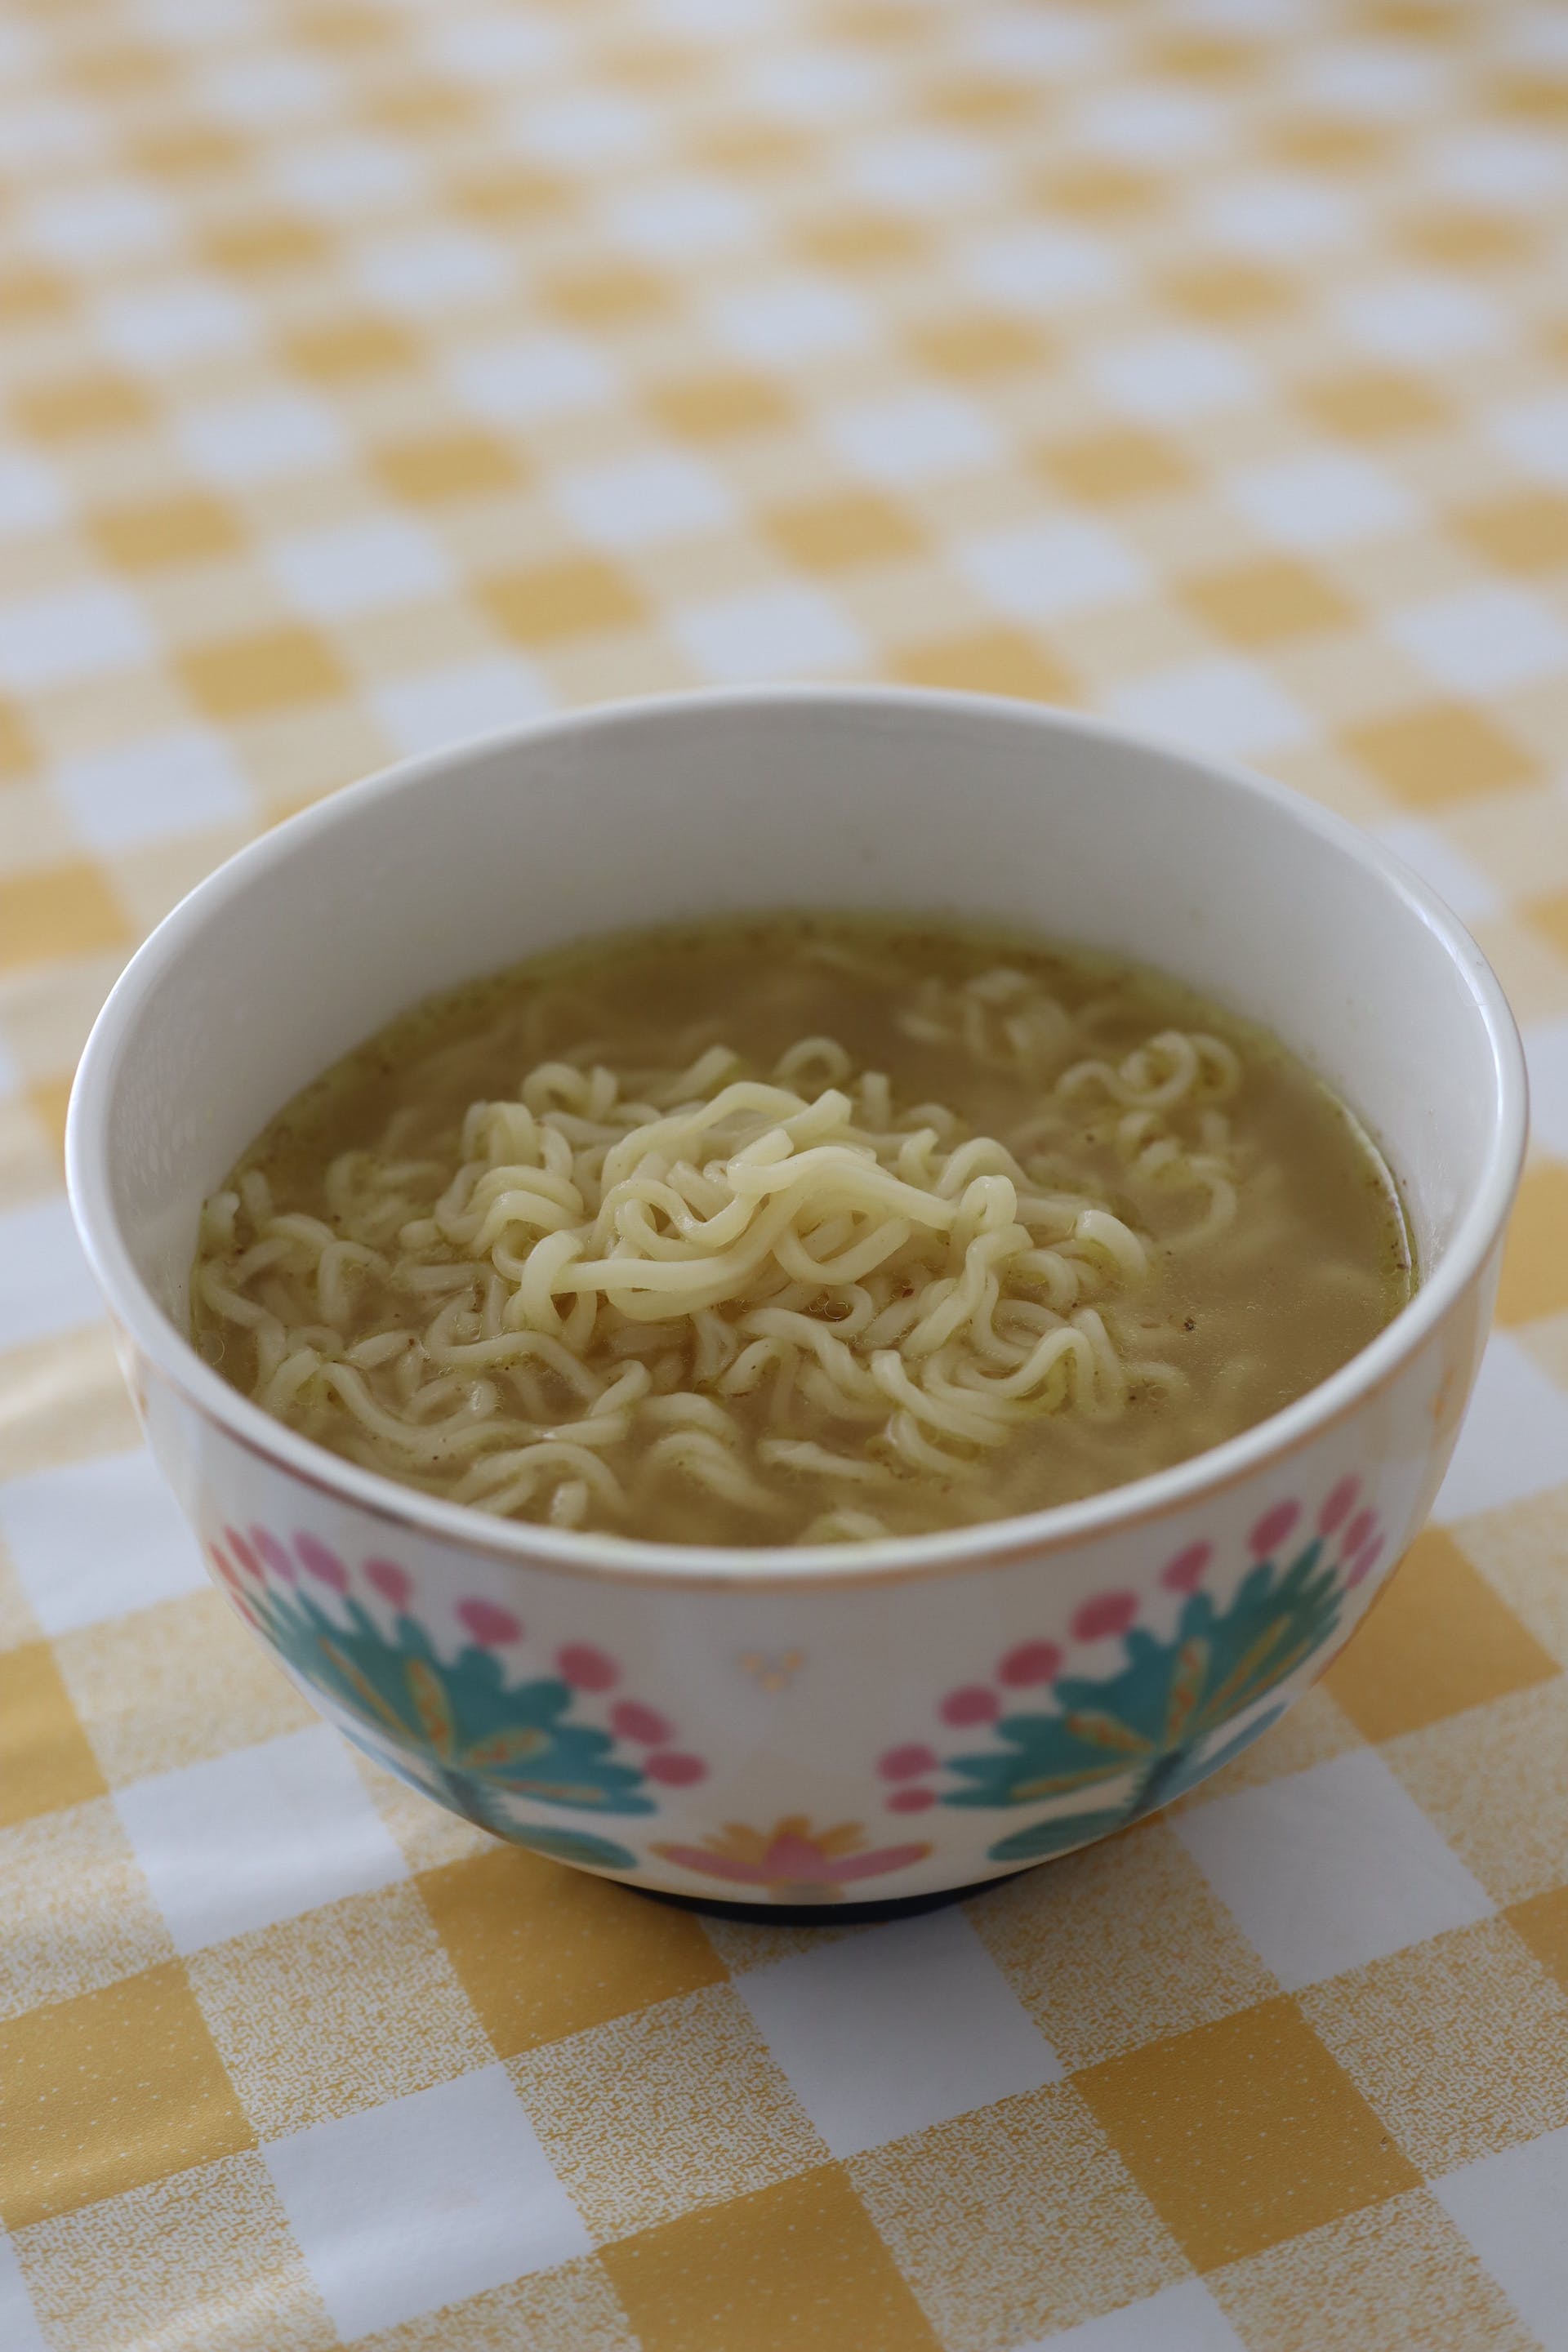 A bowl of instant noodles | Source: Pexels